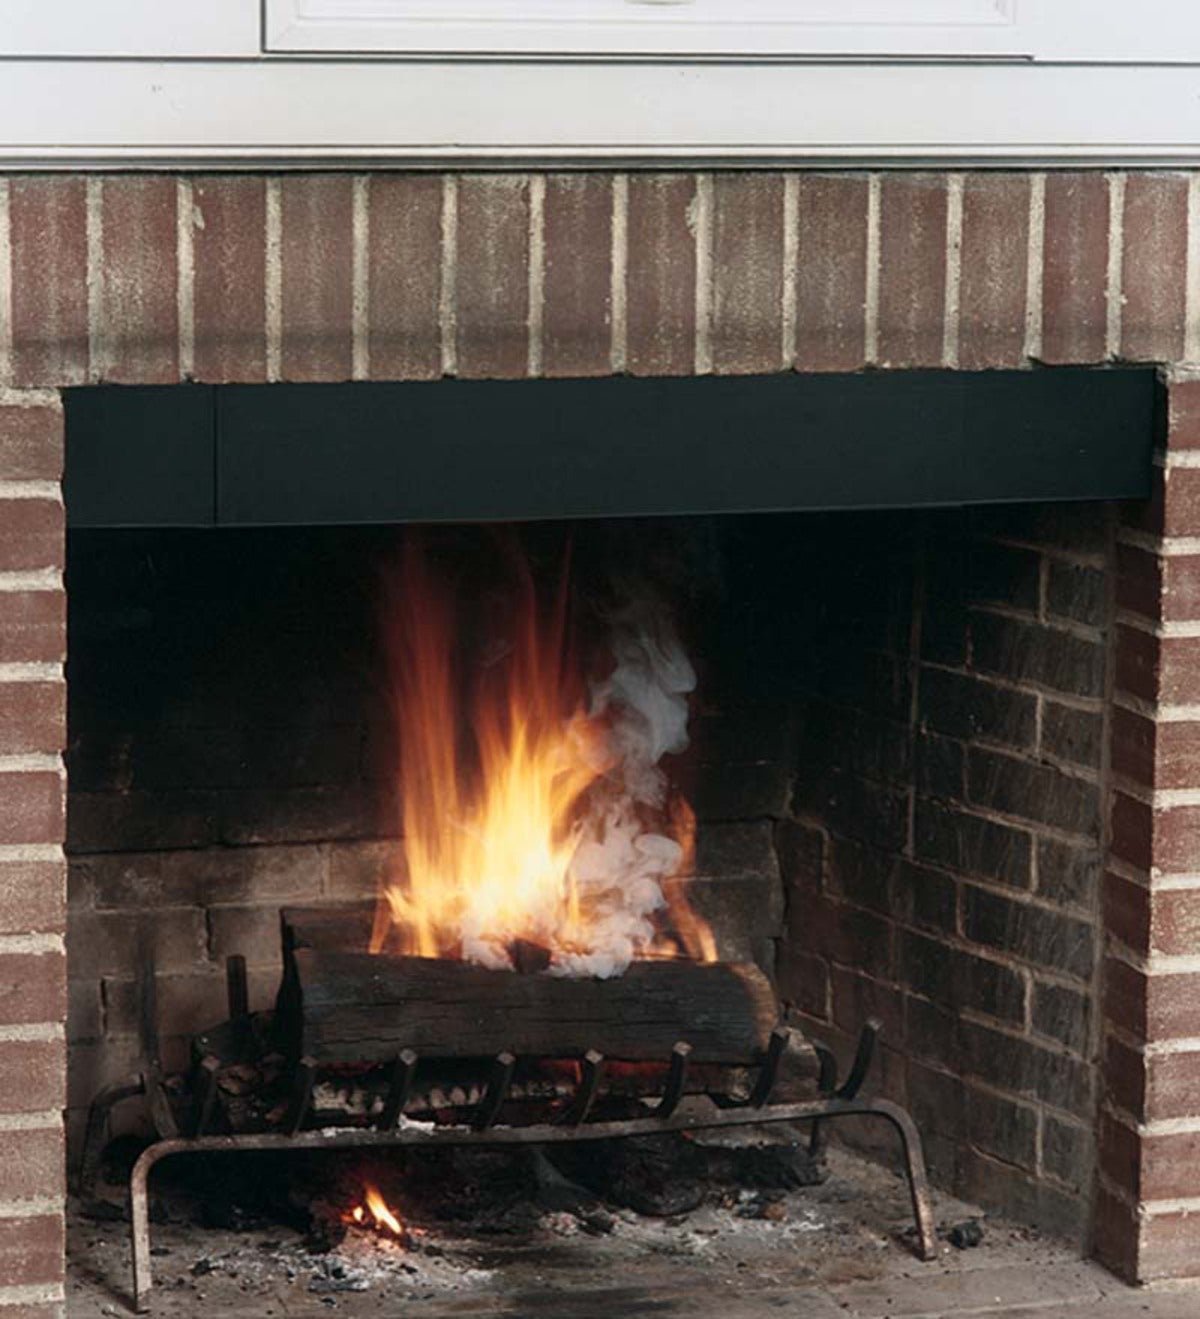 USA-Made 8-Inch Fireplace Smoke Guard